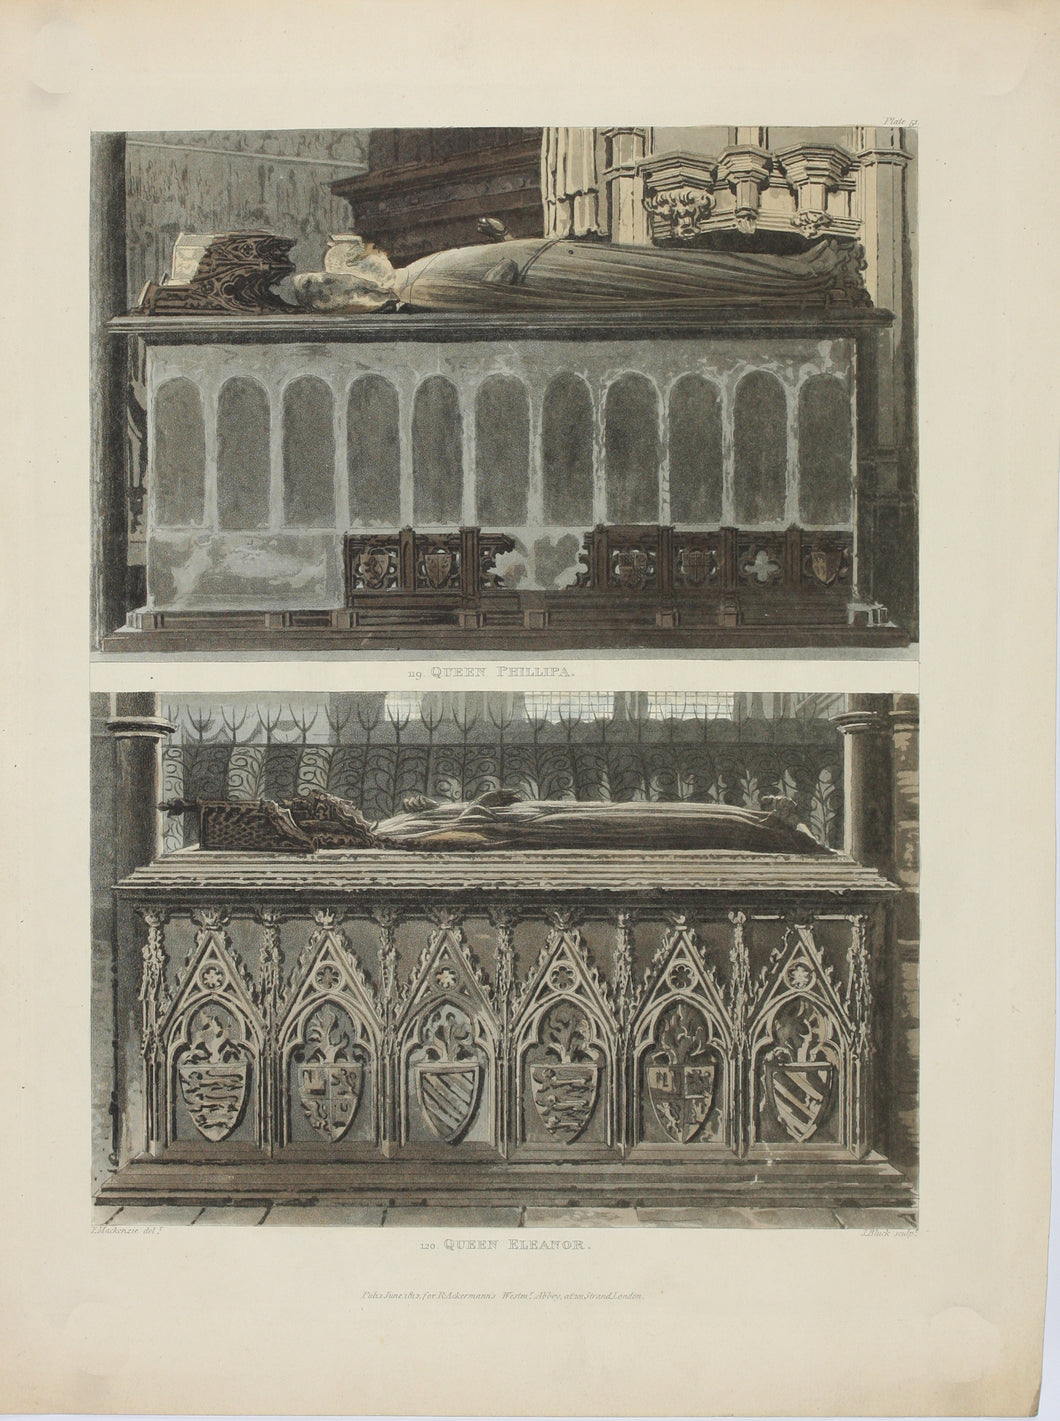 Eneas Mackenzie, after. Tombs of Queen Phillipa and Queen Eleanor. Color aquatint by John Bluck. 1812.